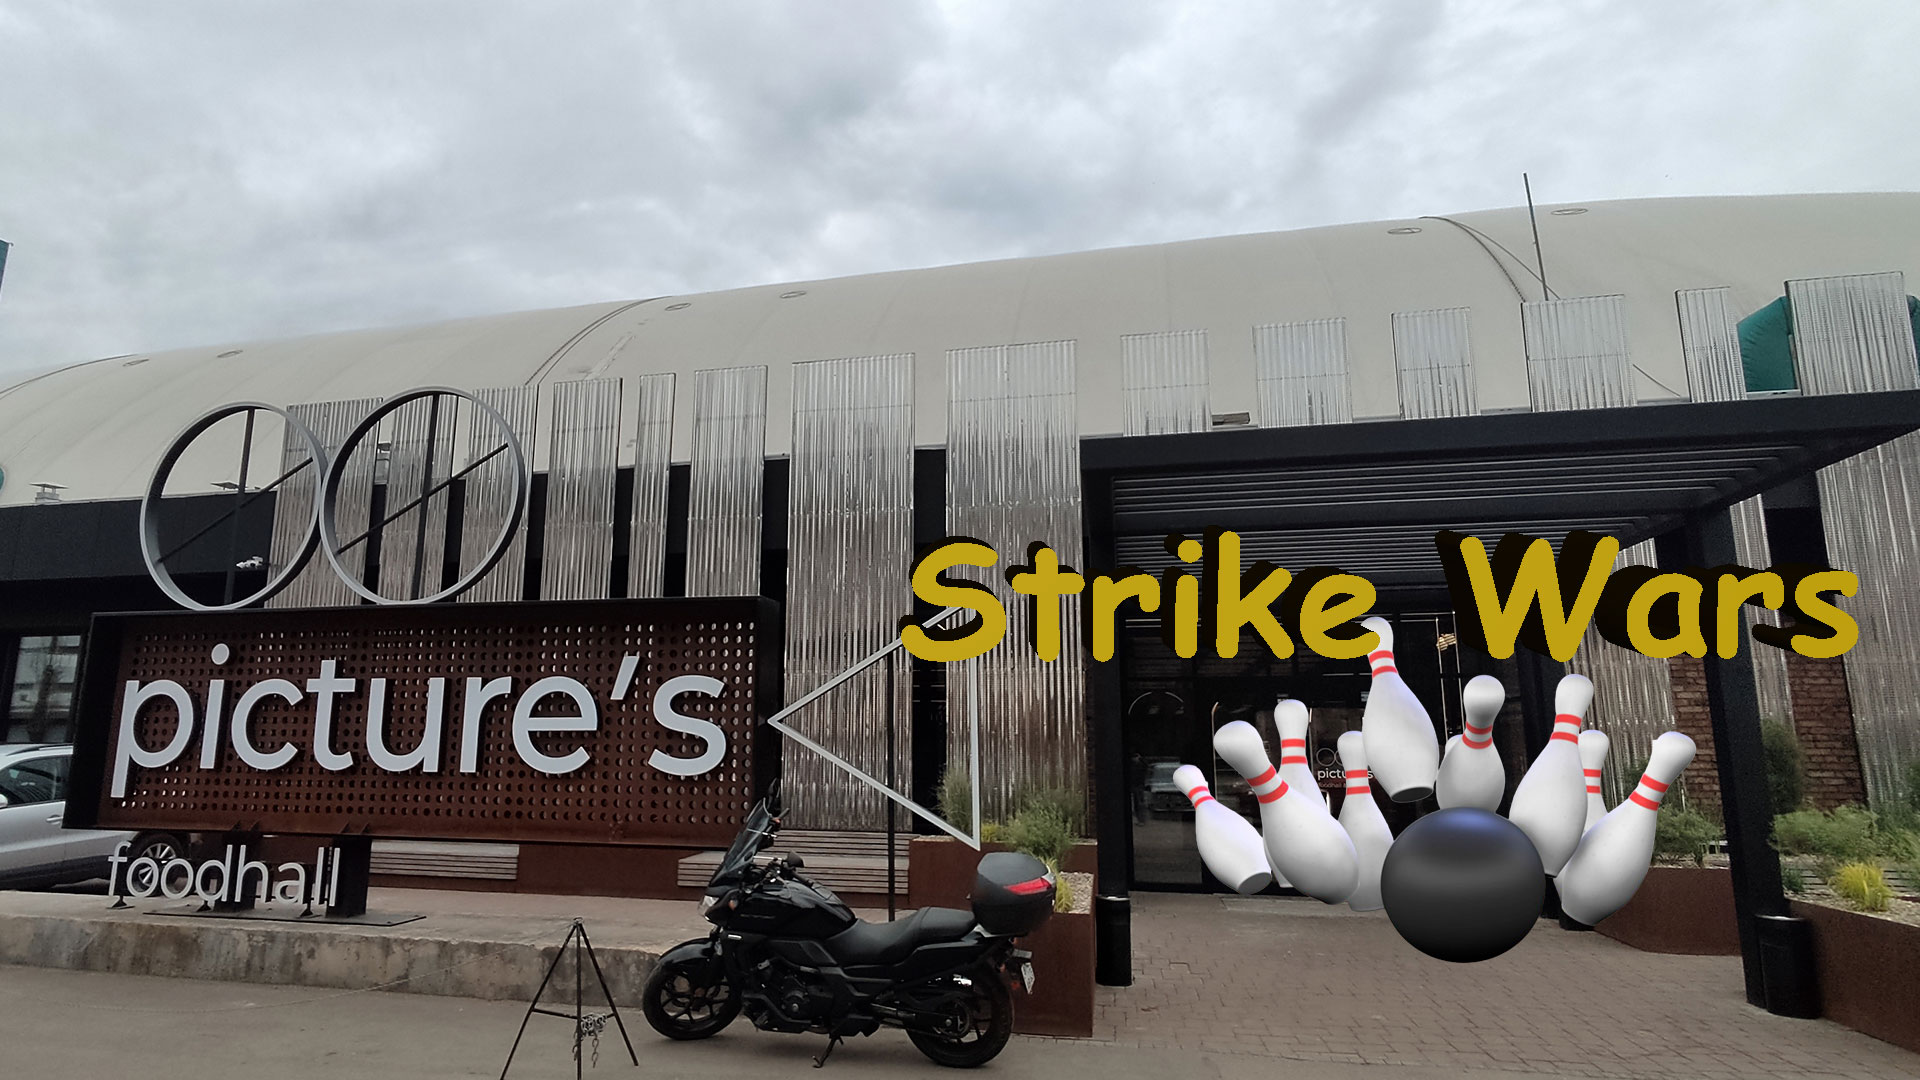 Боулинг КИНАП Самара, адрес, расположение, заказ дорожек, отзыв о посещении боулинга Strike Wars в KIN.UP